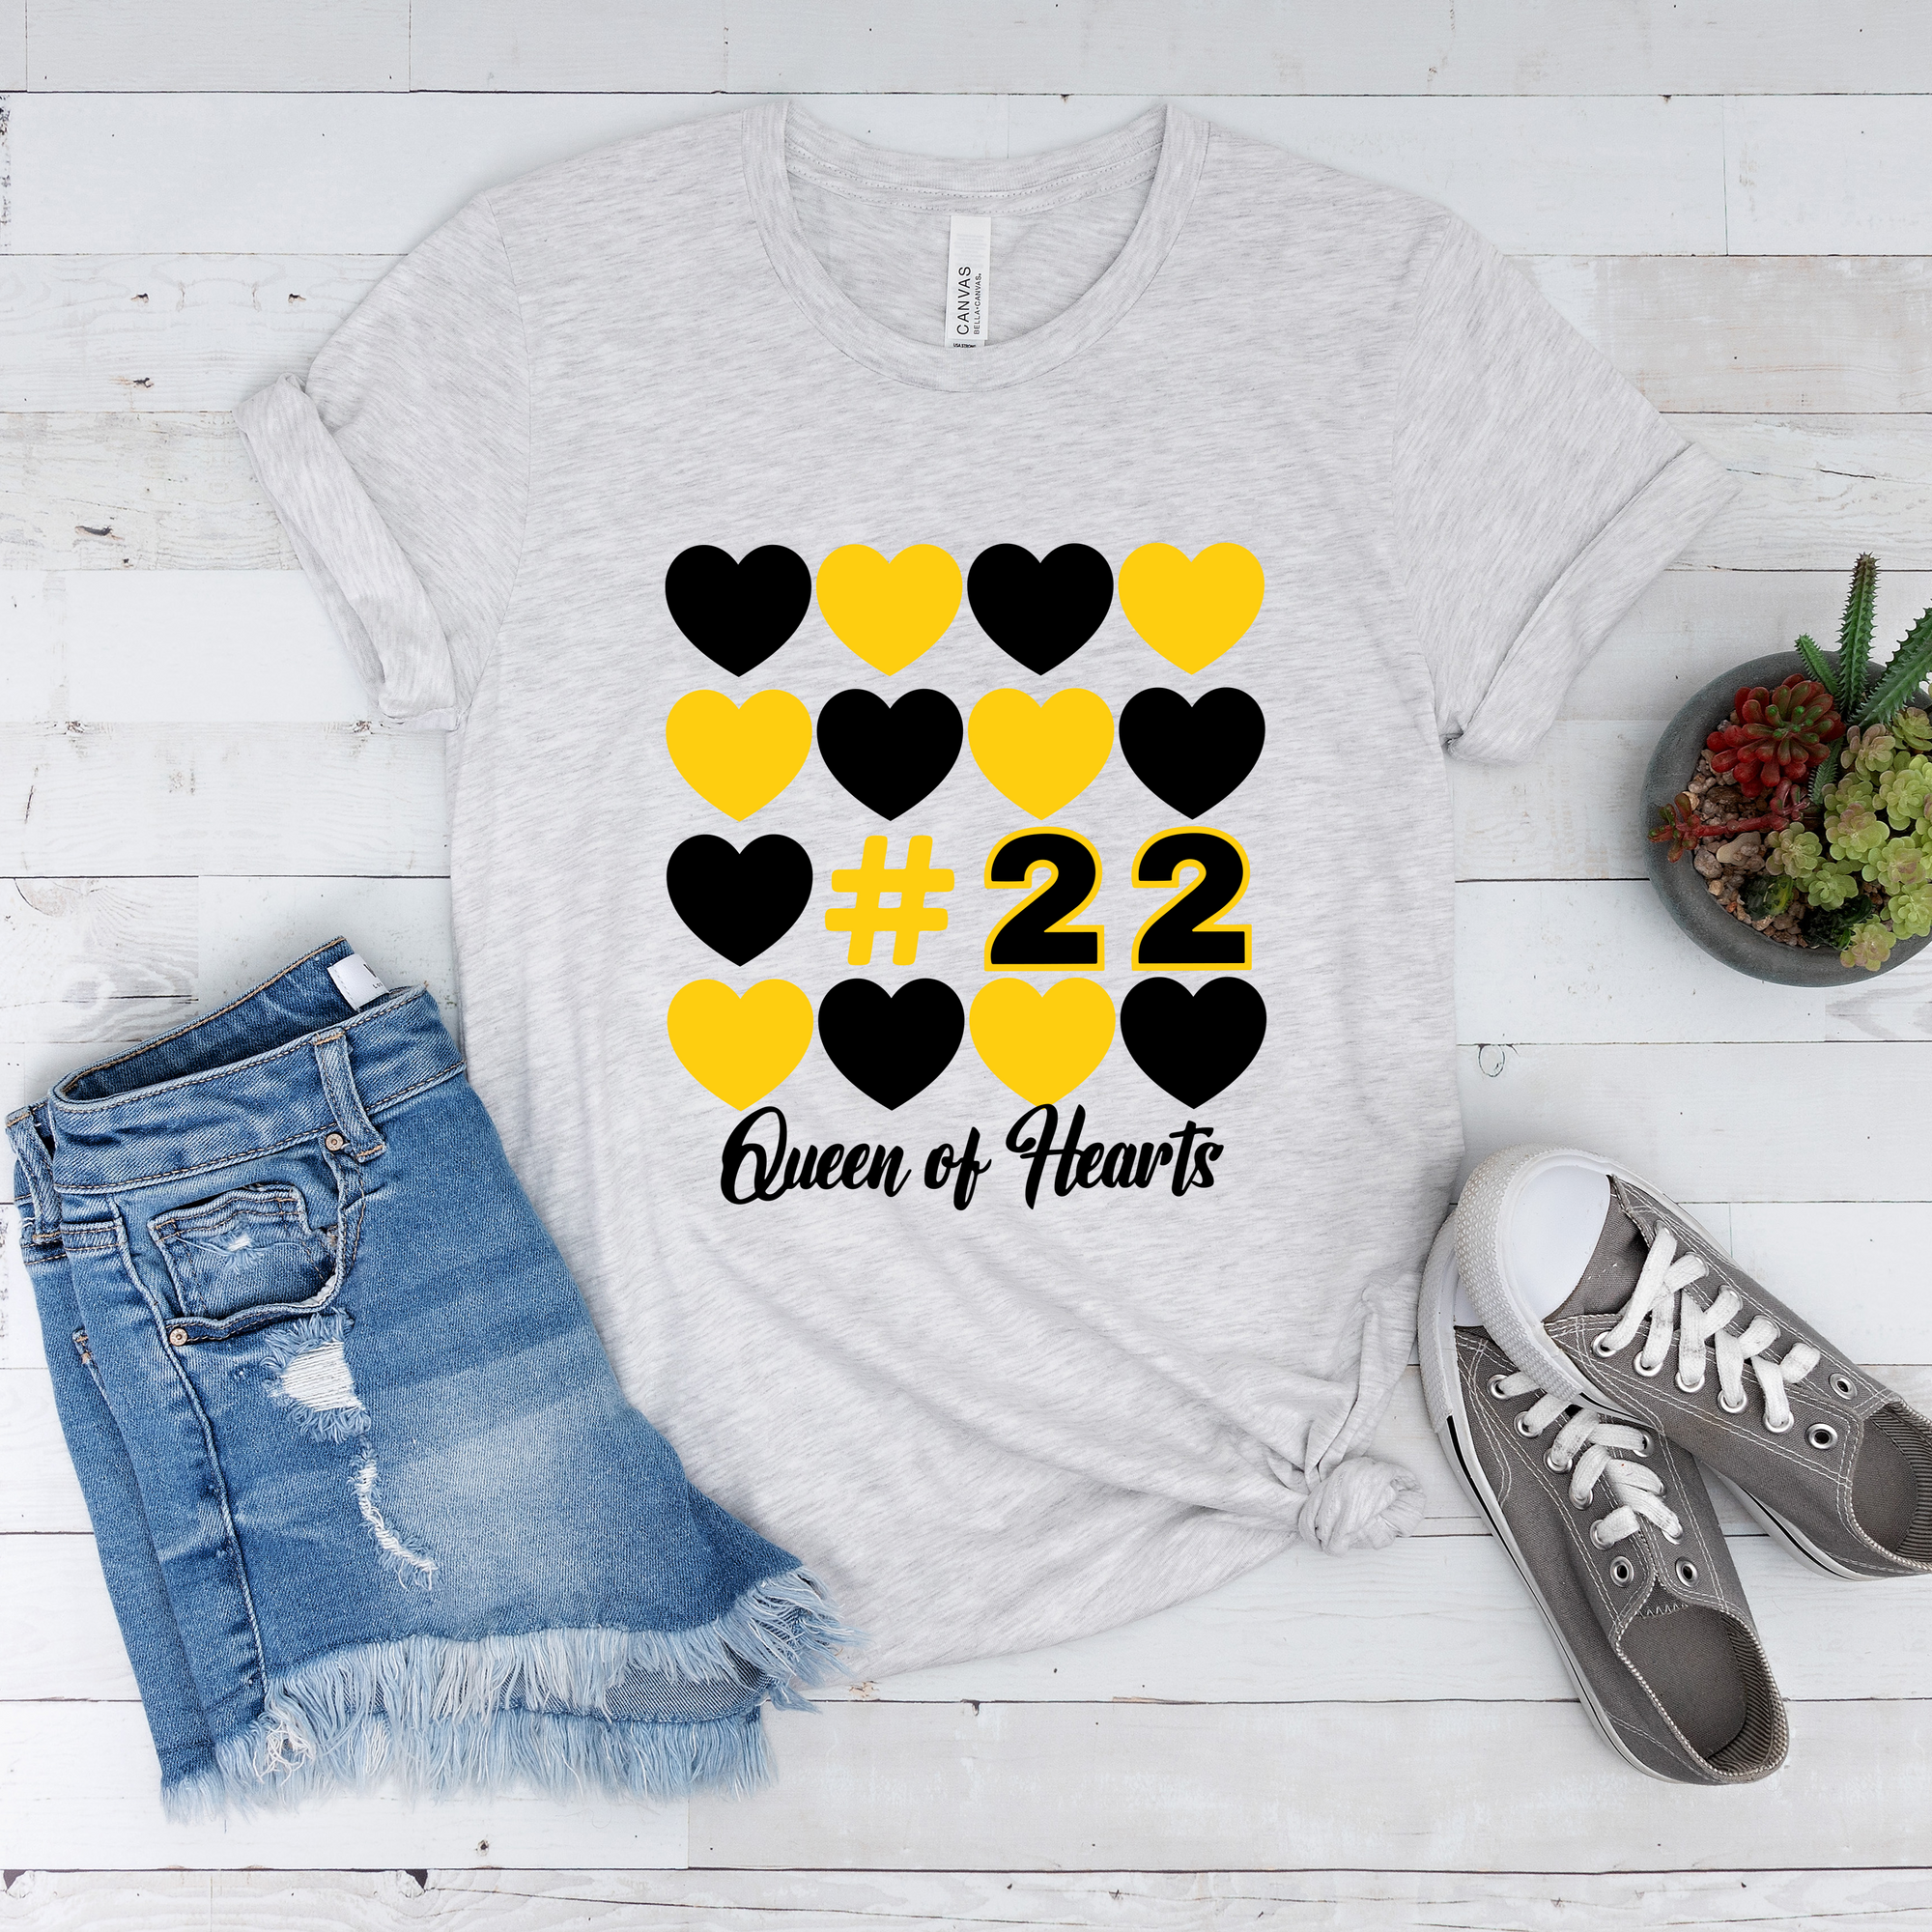 Queen of Hearts 22 Tee OR Sweatshirt